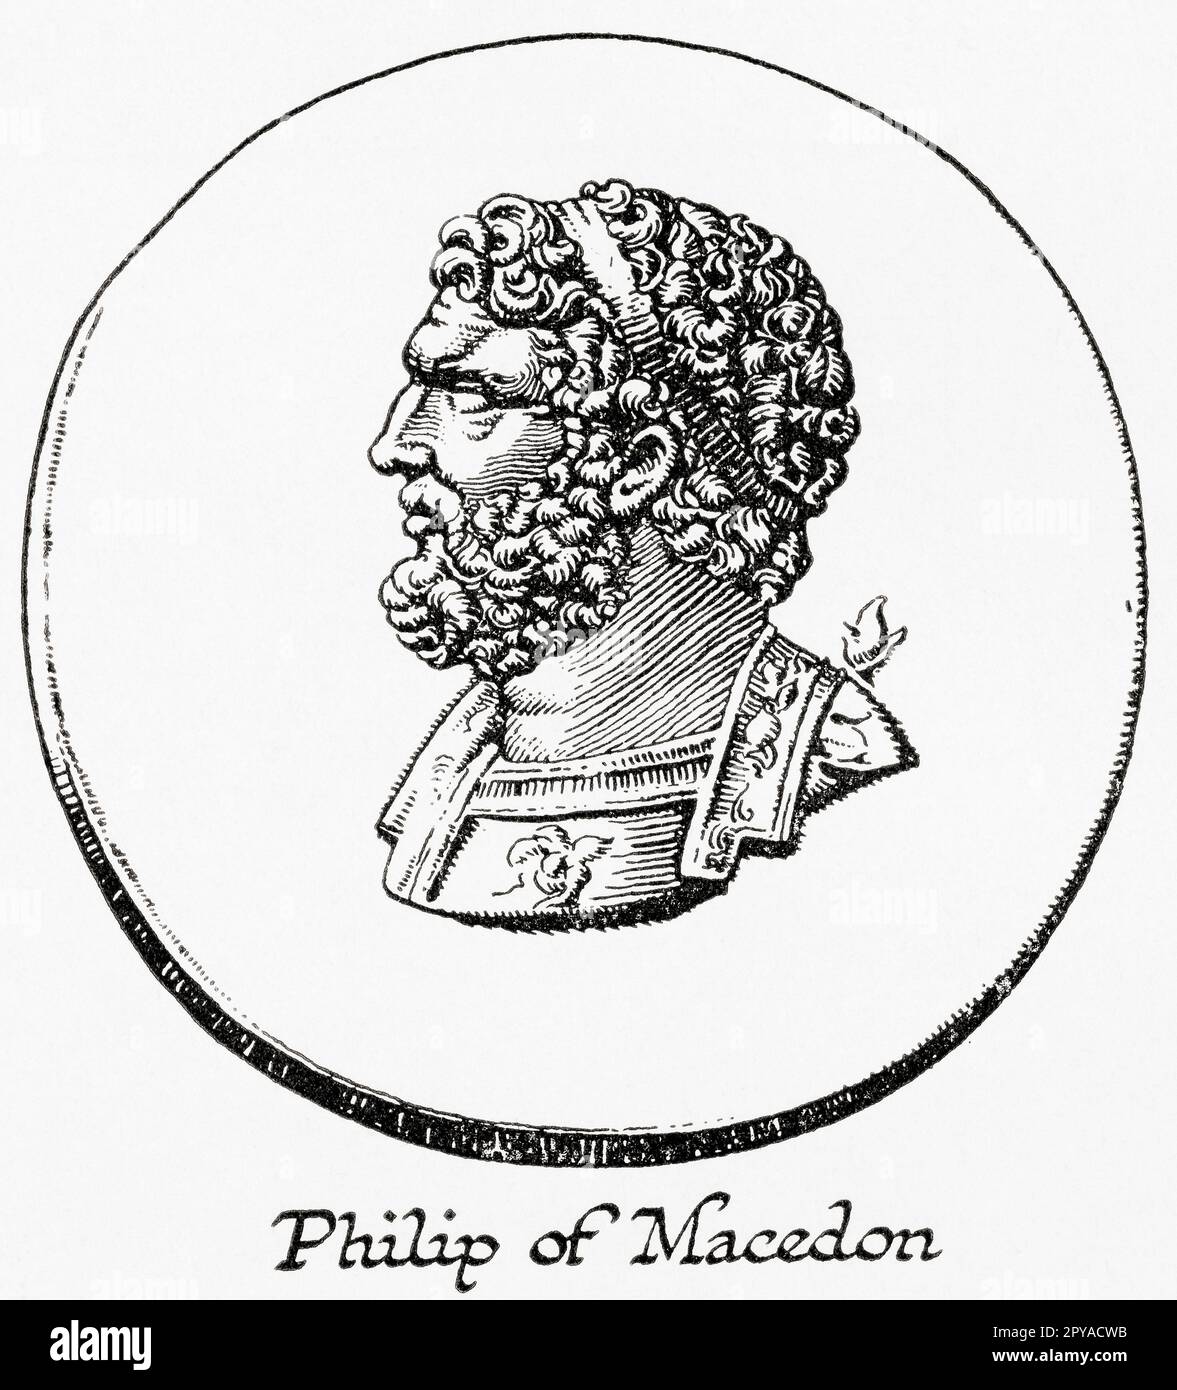 Filippo II di Macedone, 382 – 336 a.C. Re (basileo) dell'antico regno di Macedonia, 359 - 336 a.C. Dal libro Outline of History di H.G. Wells, pubblicato nel 1920. Foto Stock